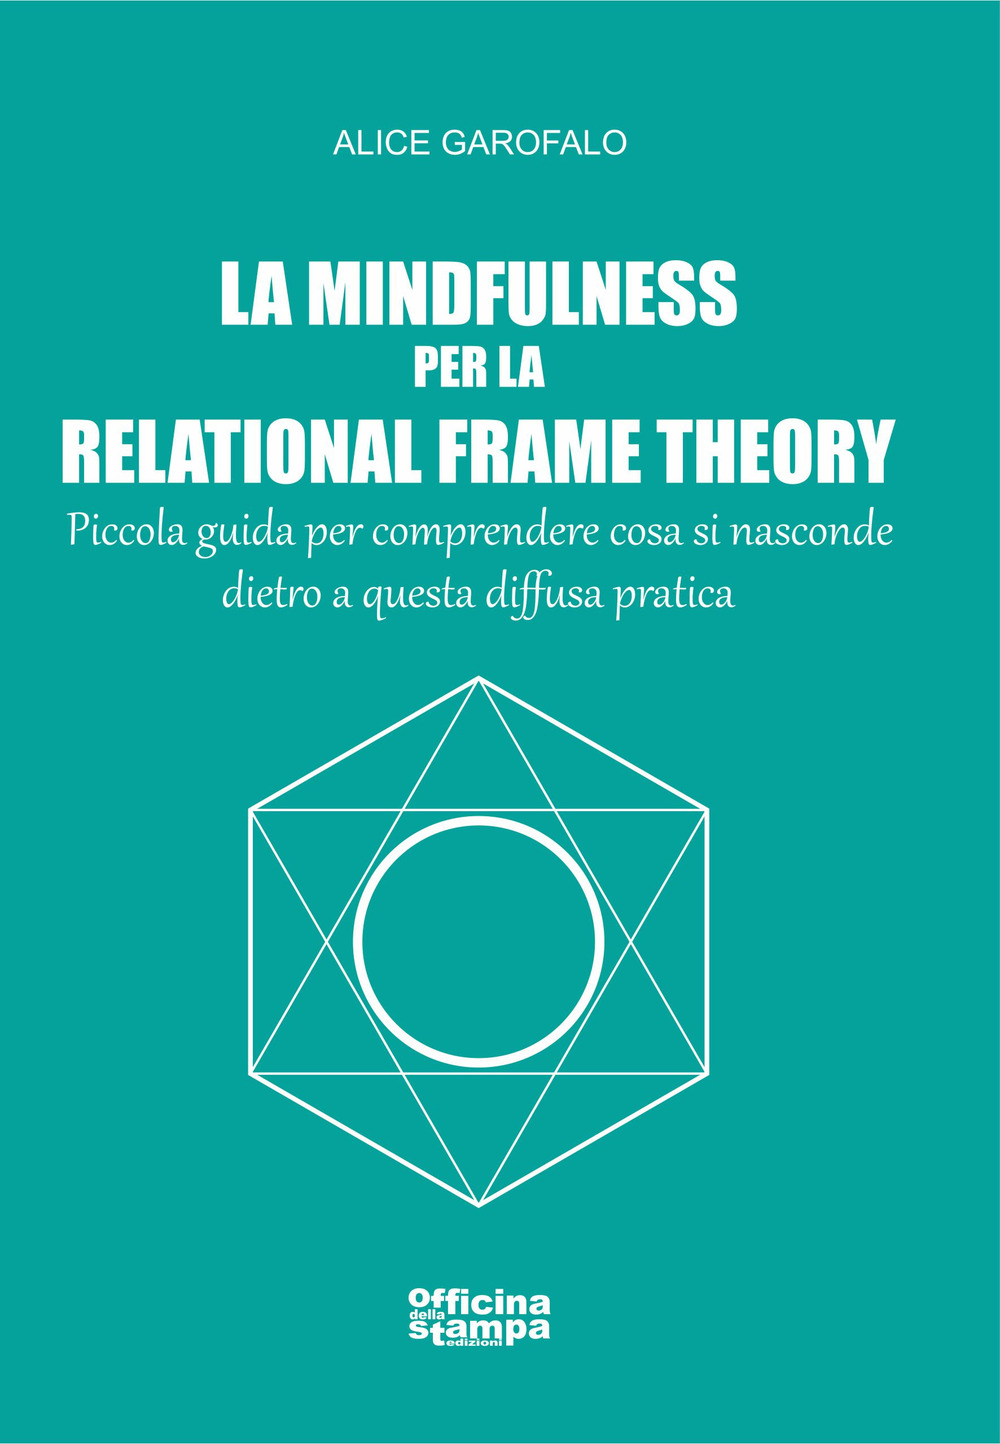 La mindfulness per la relational frame theory. Piccola guida per comprendere cosa si nasconde dietro a questa diffusa pratica